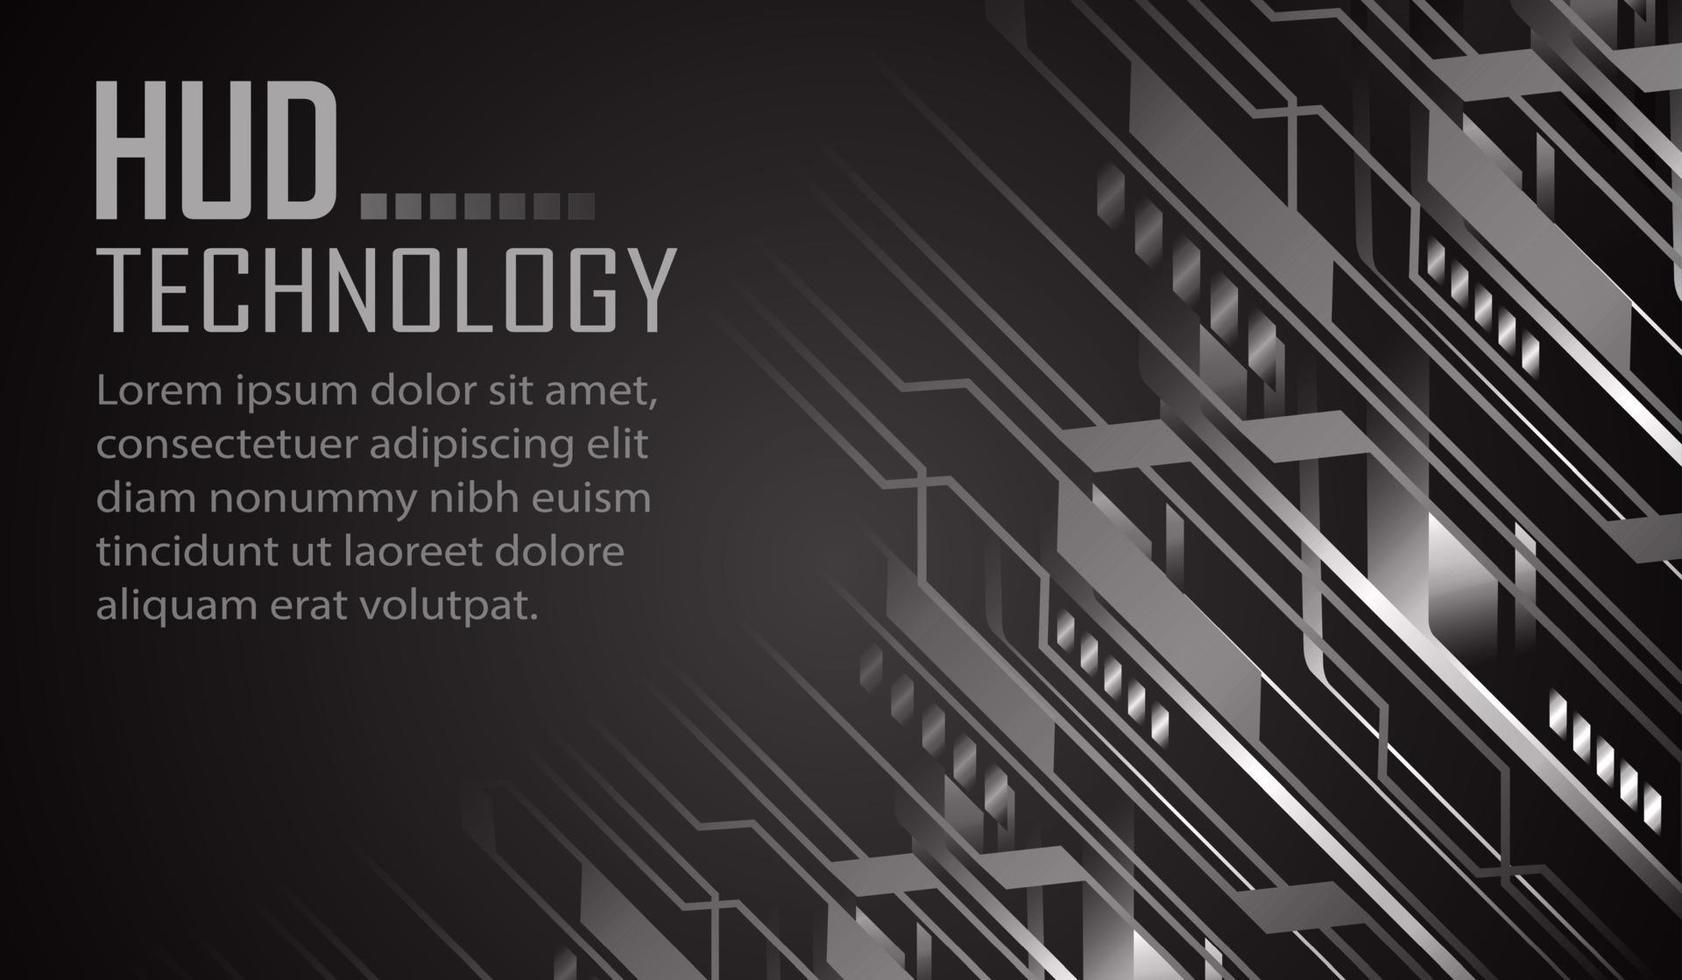 cyber circuit toekomstige technologie concept achtergrond, tekst vector